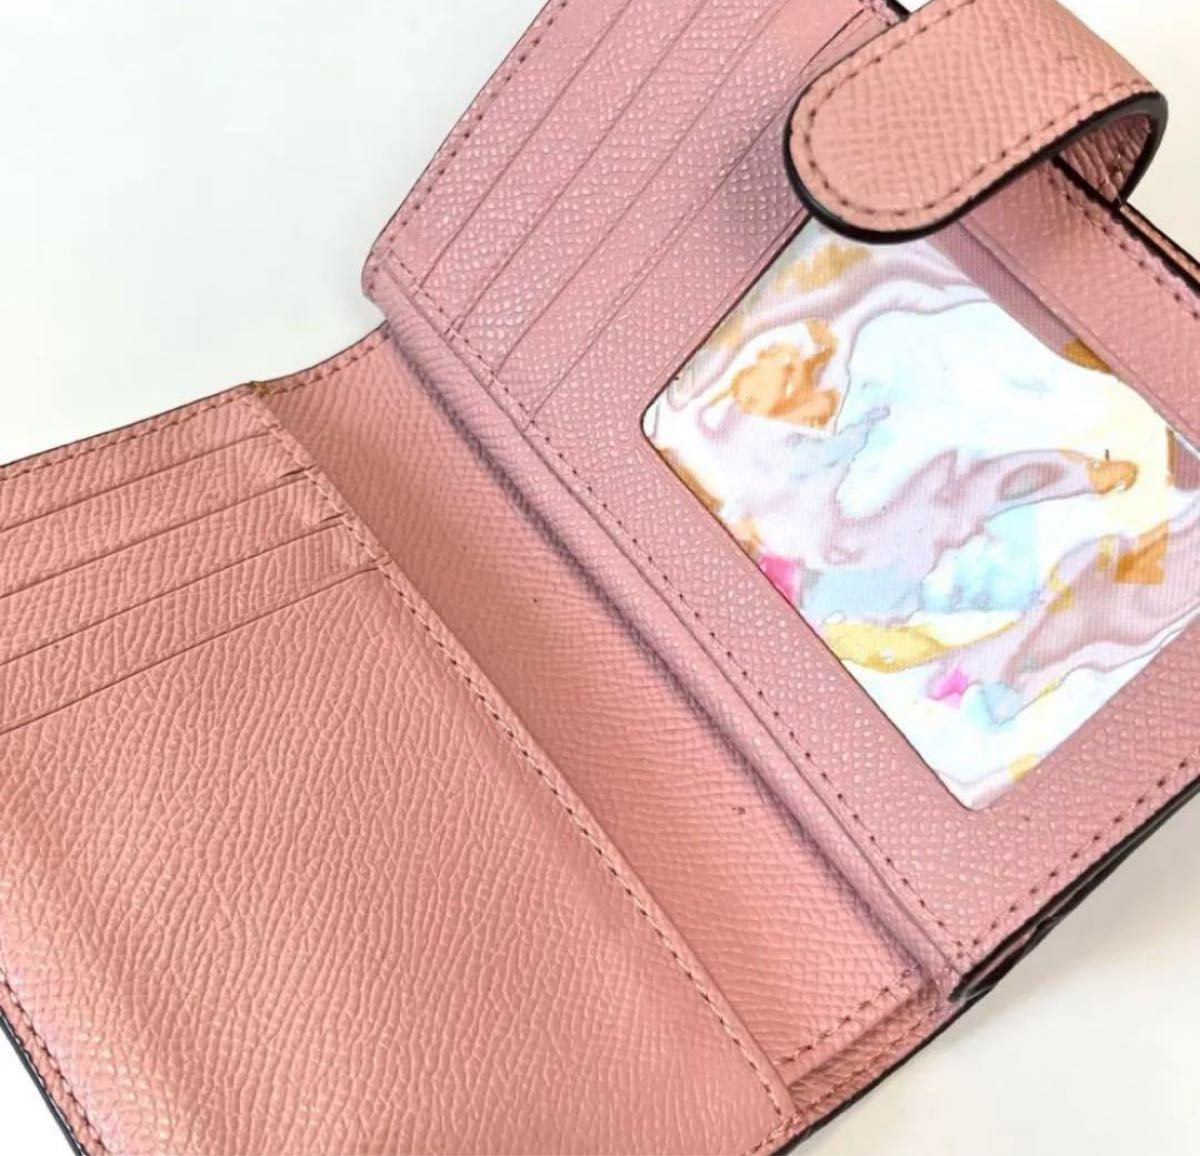 Coach 女性のための美しいピンクの財布